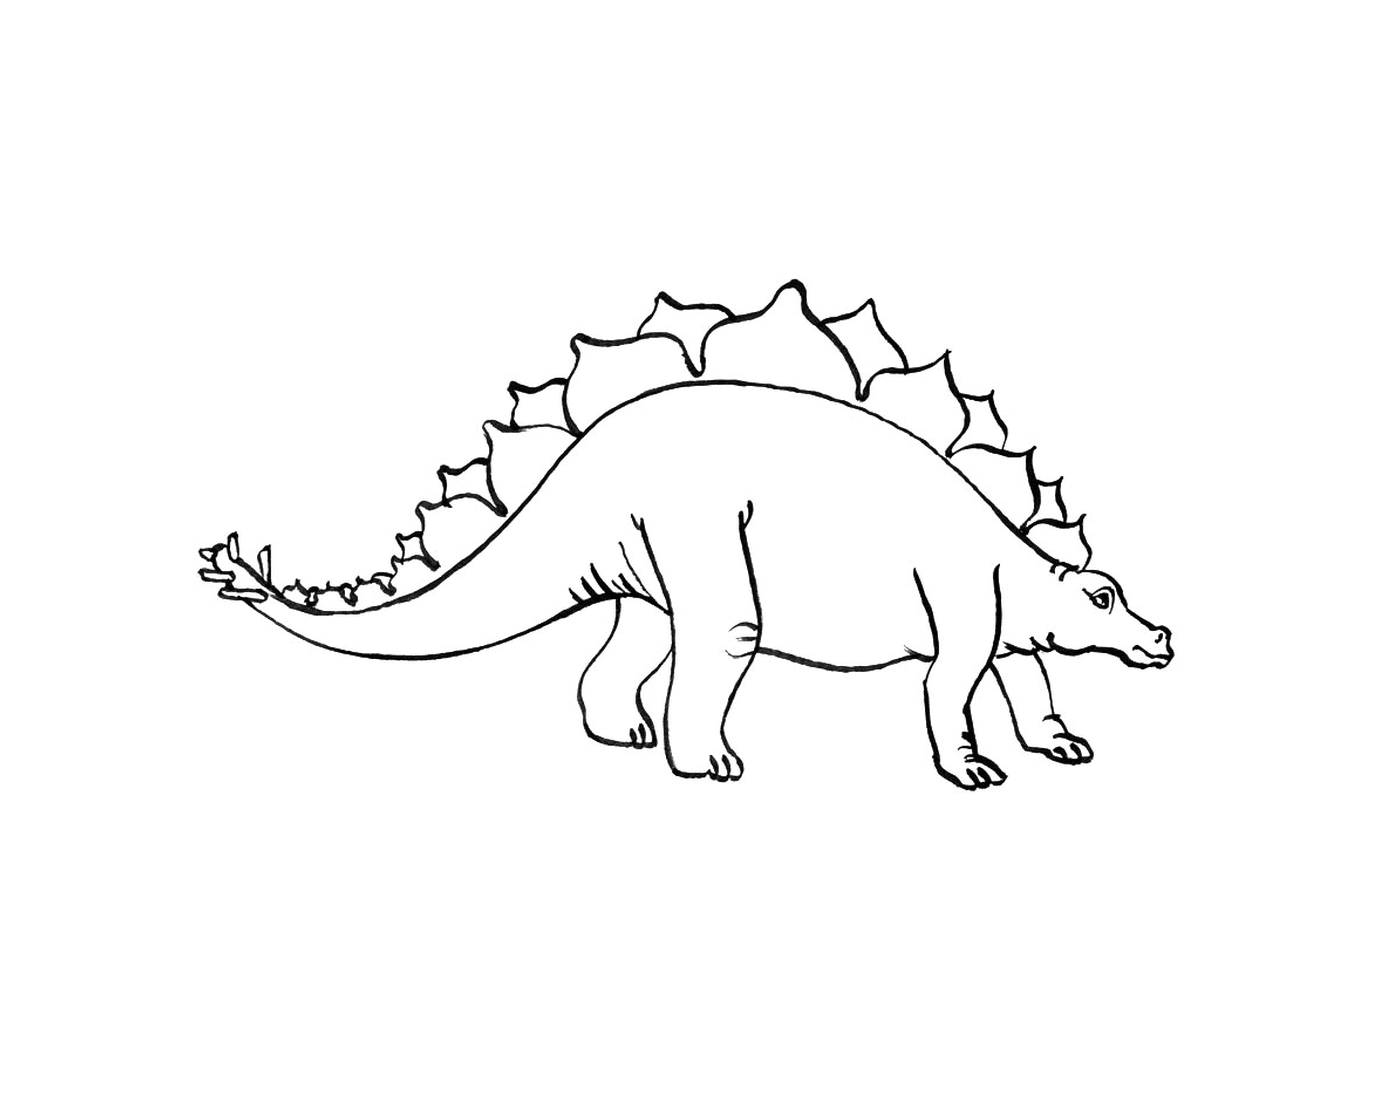  Stegosaure stehend in einer schwarz-weißen Zeichnung 